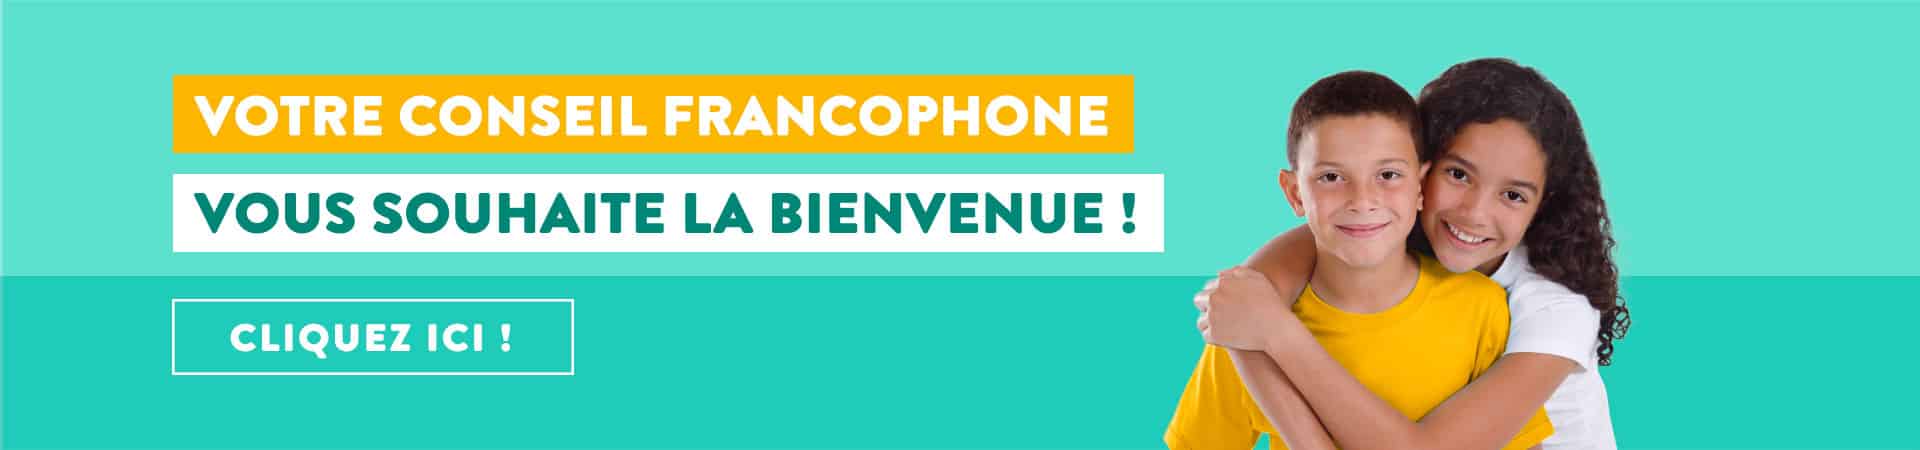 Ton conseil francophone te souhaite la bienvenue !